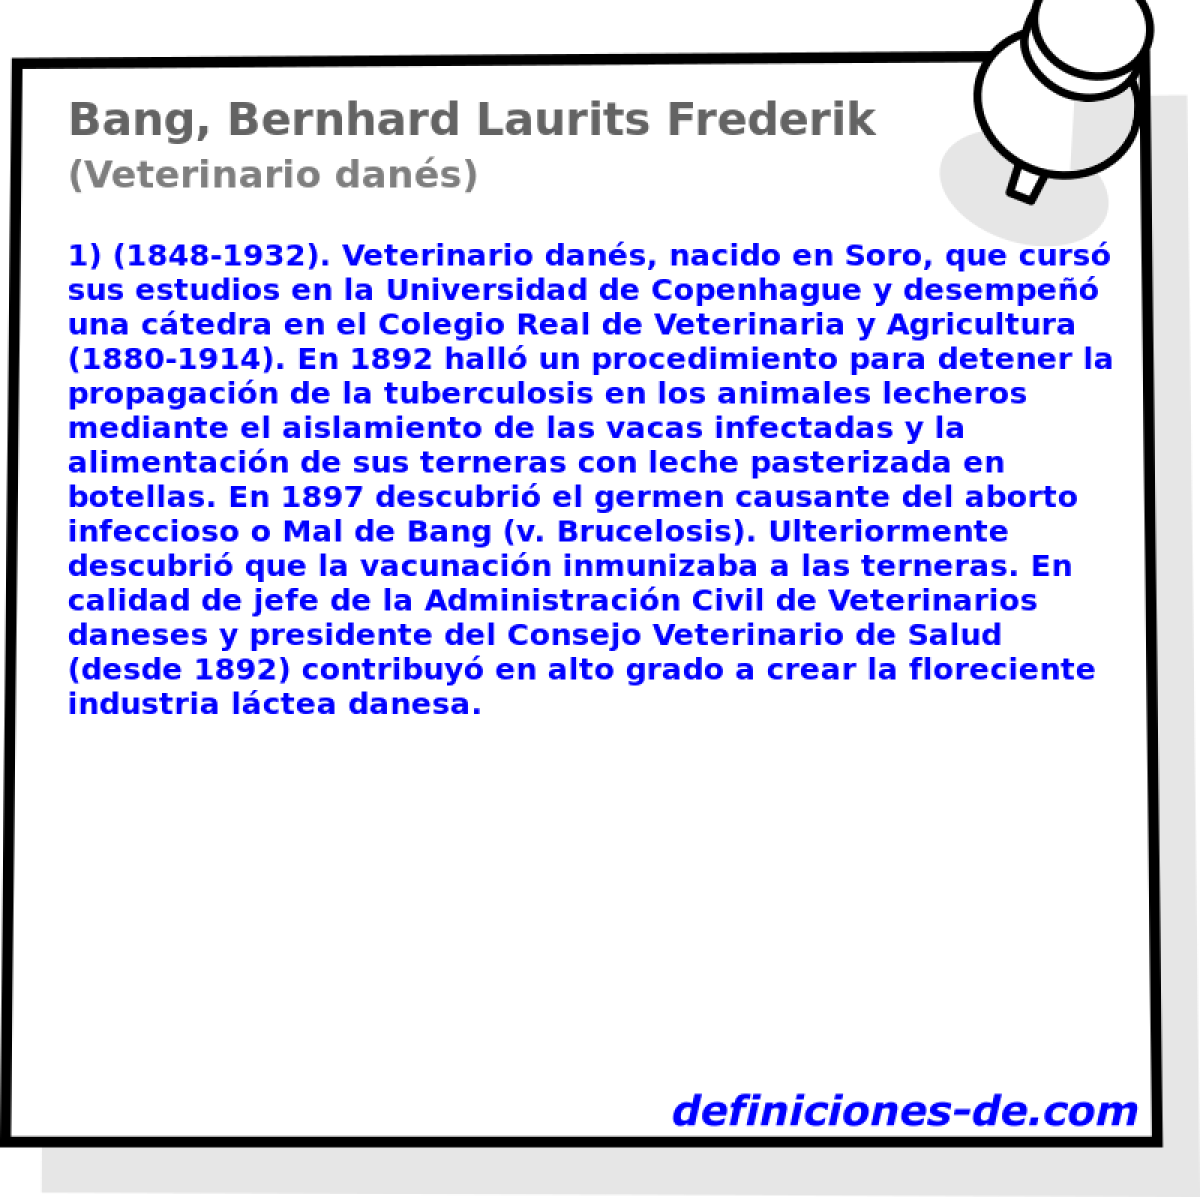 Bang, Bernhard Laurits Frederik (Veterinario dans)